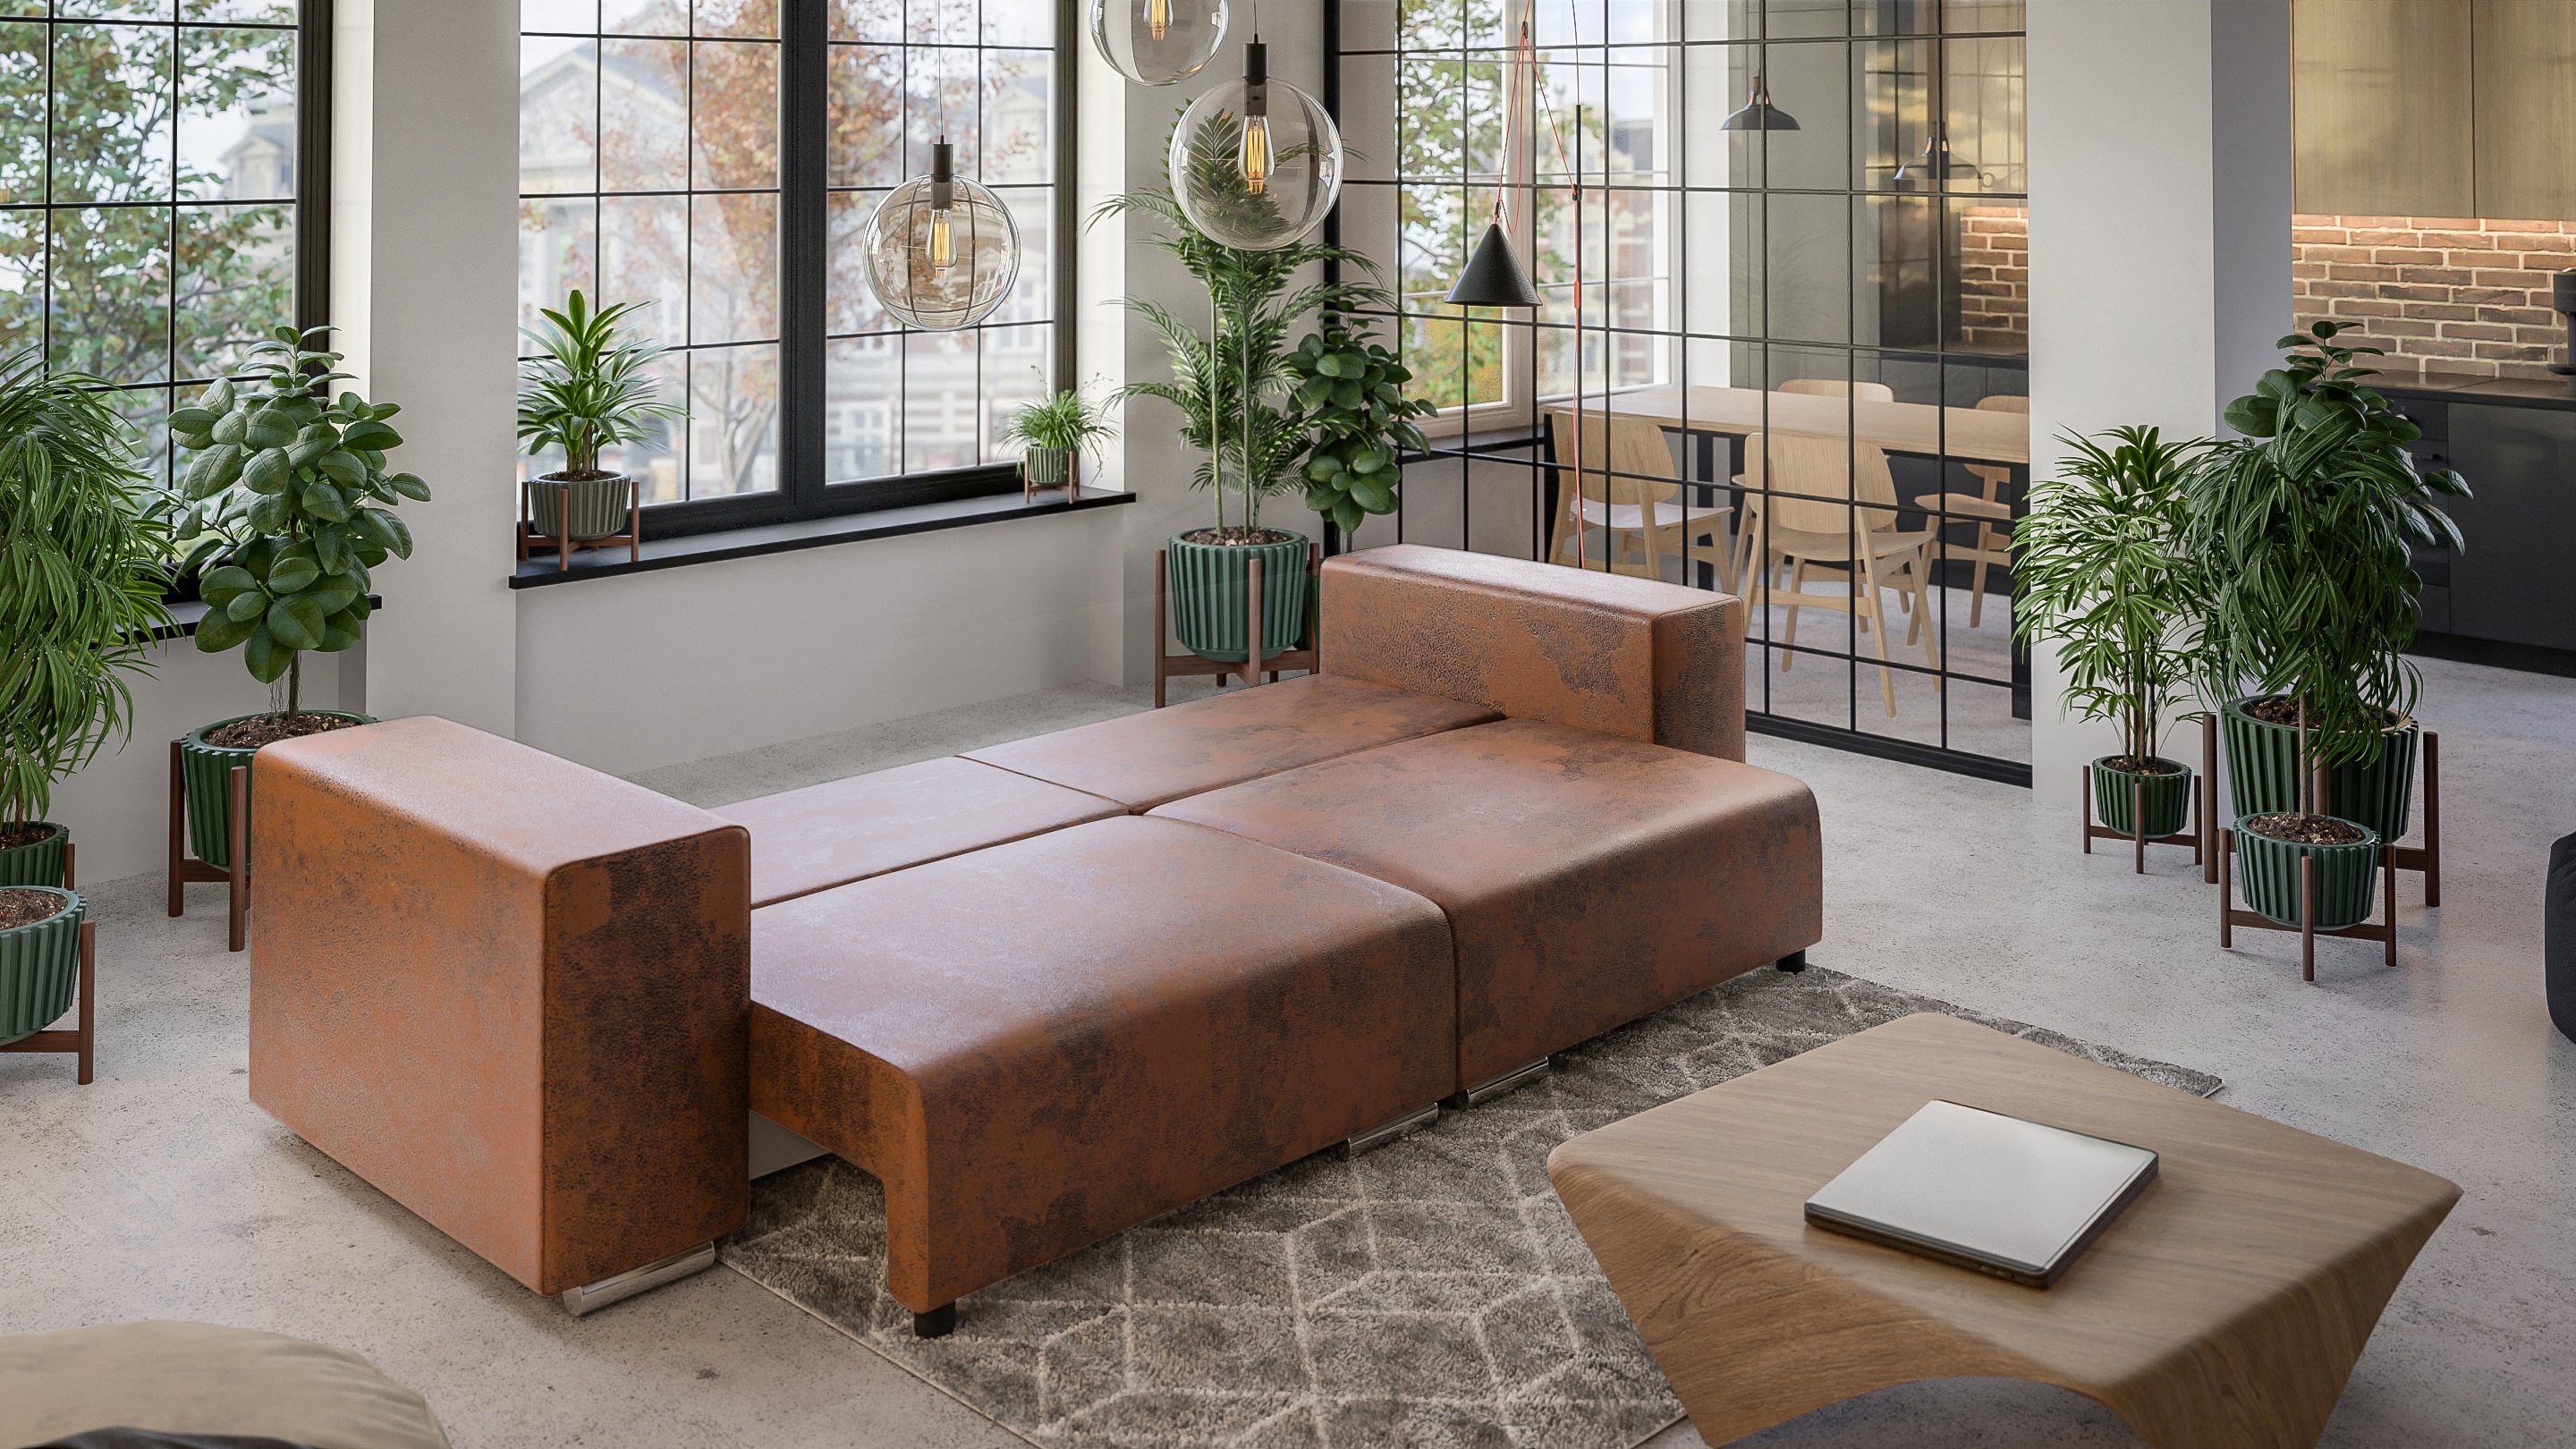 Möbel Braun Big-Sofa Wellenfederung mit Schlaffunktion, mit Amaru 5-Sitzer S-Style